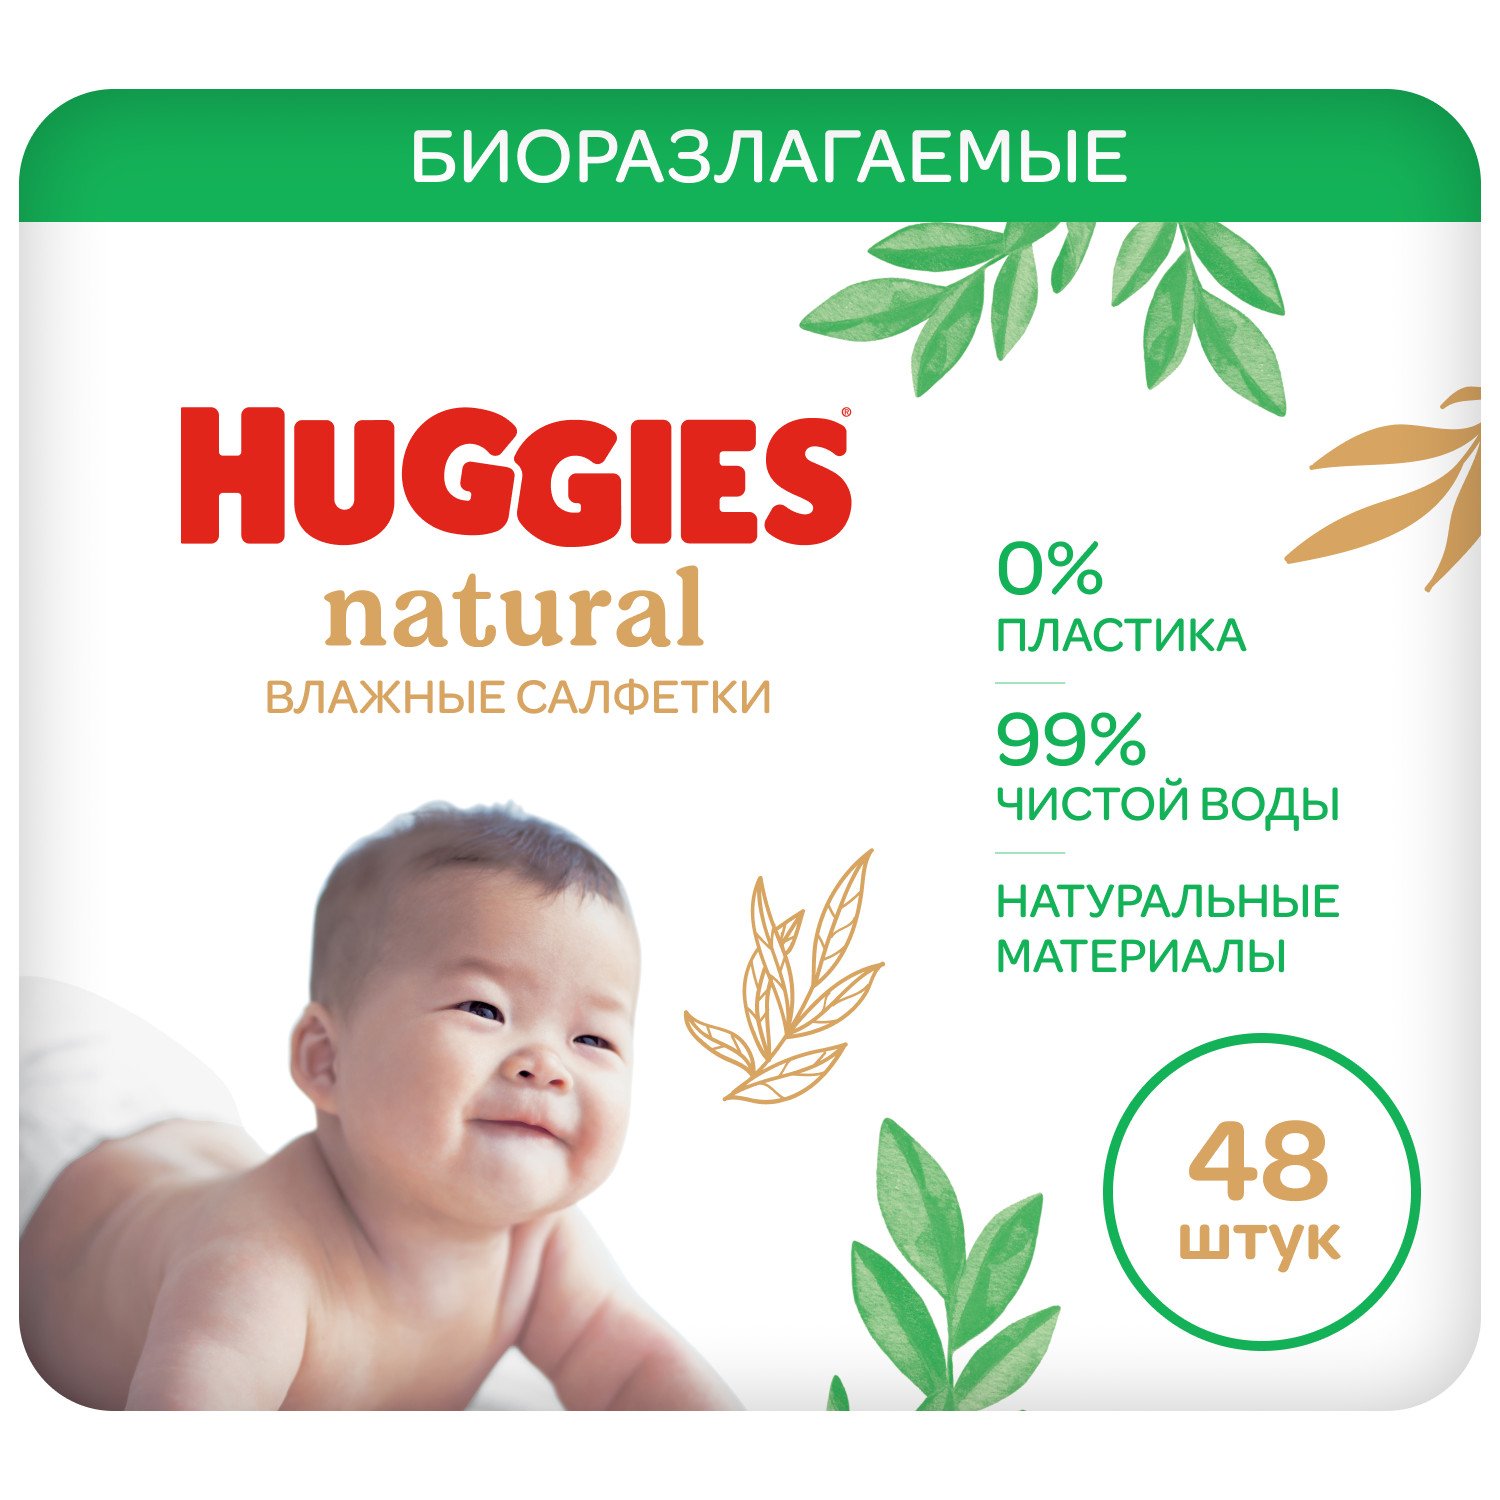 Huggies natural детские влажные салфетки N 48